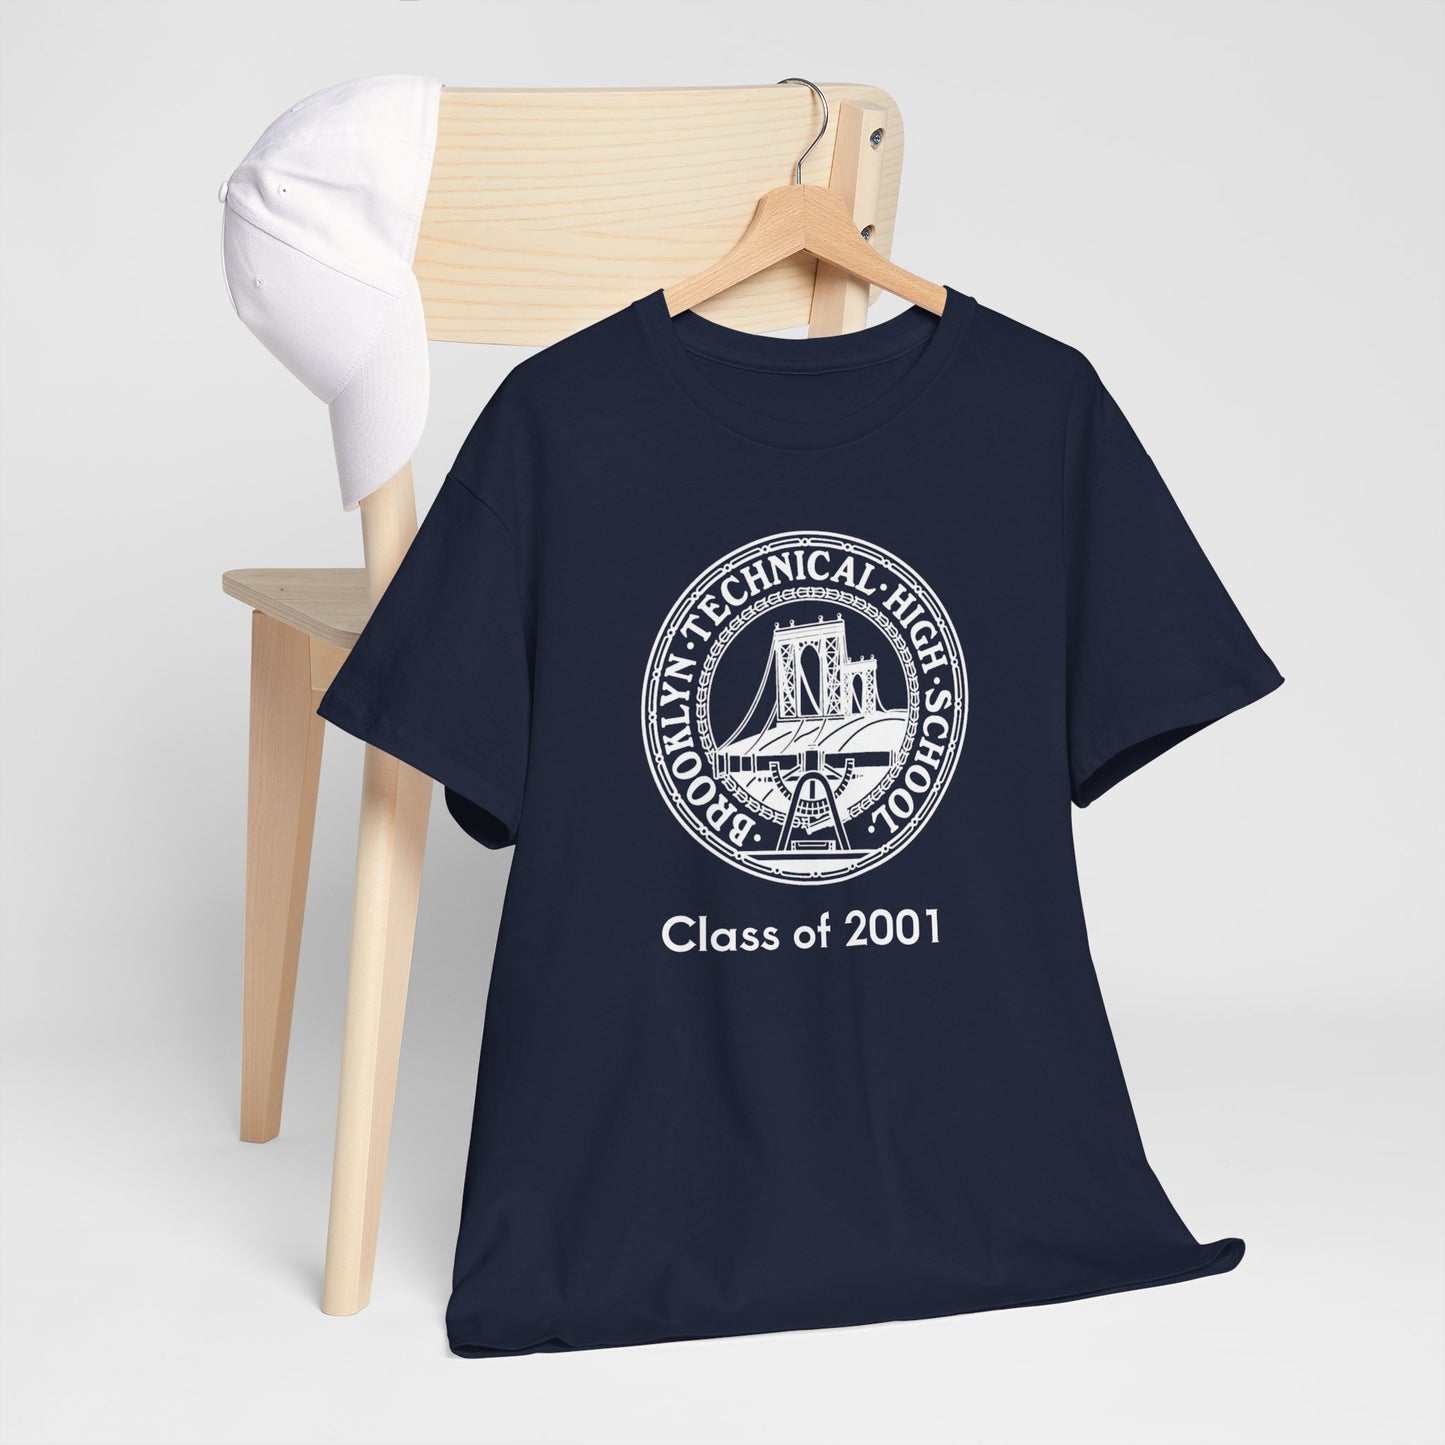 Classic Tech Seal - Men's Heavy Cotton T-Shirt - Class Of 2001